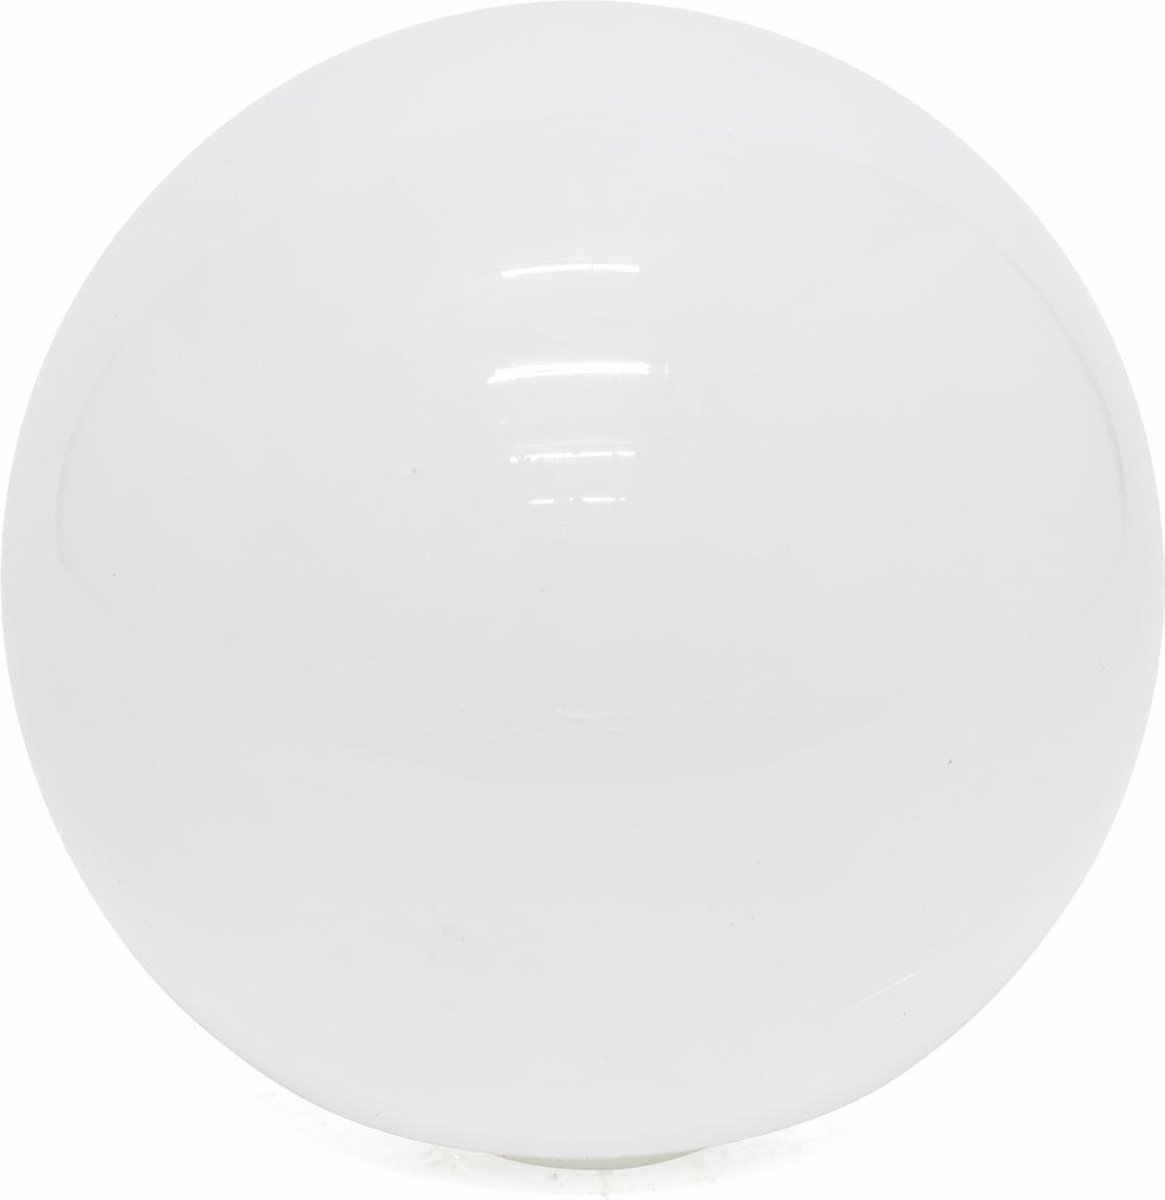 Lamplord Lampglas, Witte Bol, 15 cm diameter